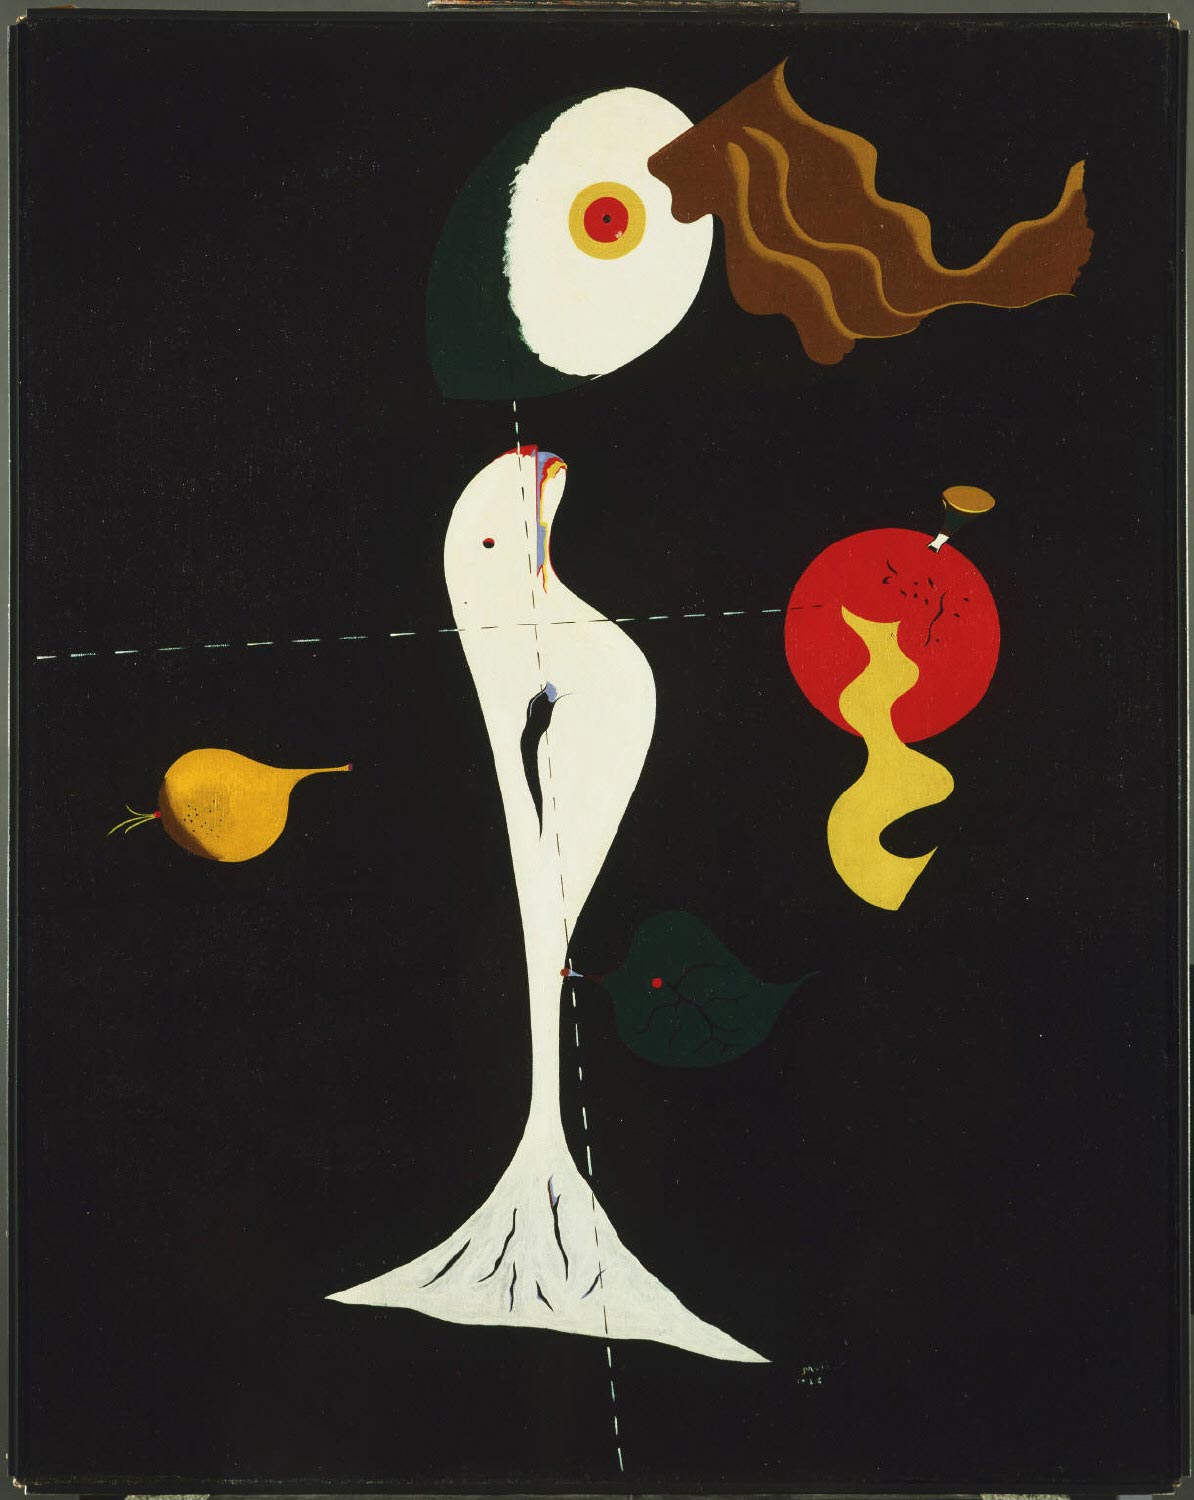 Joan Miró, Nudo (1926; olio su tela, 92,4 x 73,7 cm; Filadelfia, Philadelphia Museum of Art) 